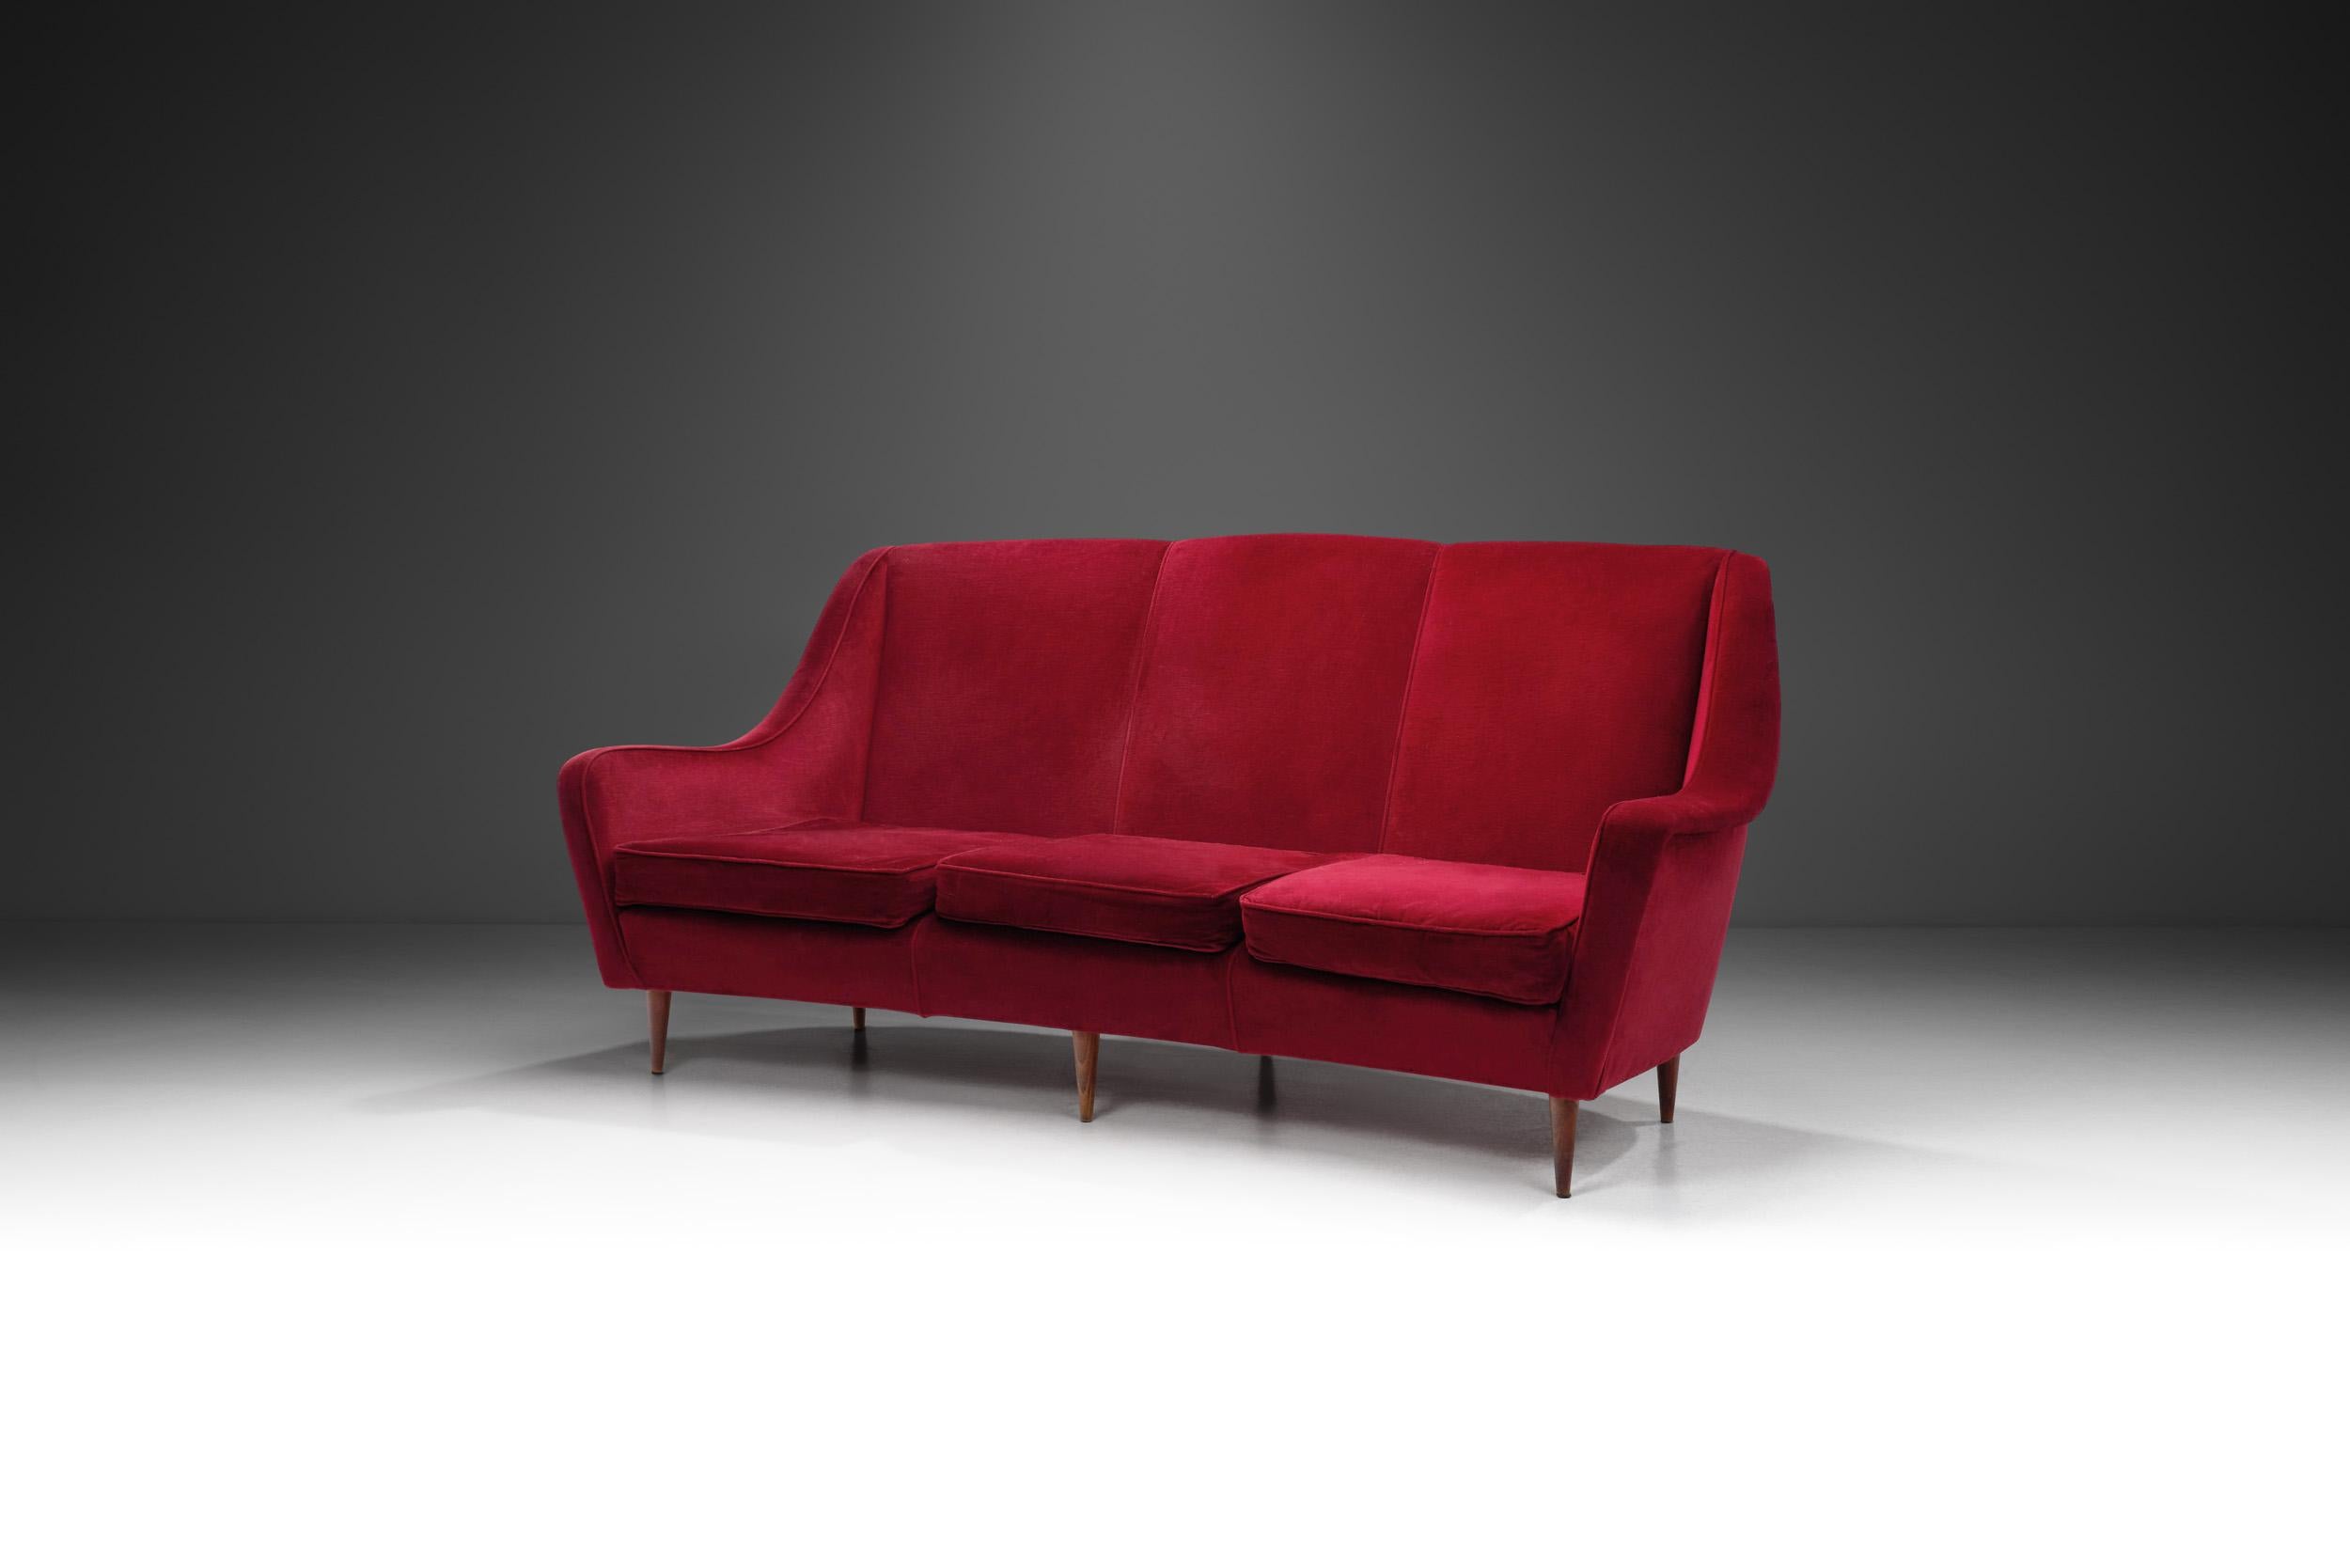 Ce canapé italien des années 1950 dégage un charme et une élégance intemporels. Habillé d'un riche velours rouge, ce canapé trois places démontre visuellement pourquoi l'attrait des meubles italiens du milieu du siècle perdure. Le mobilier moderne